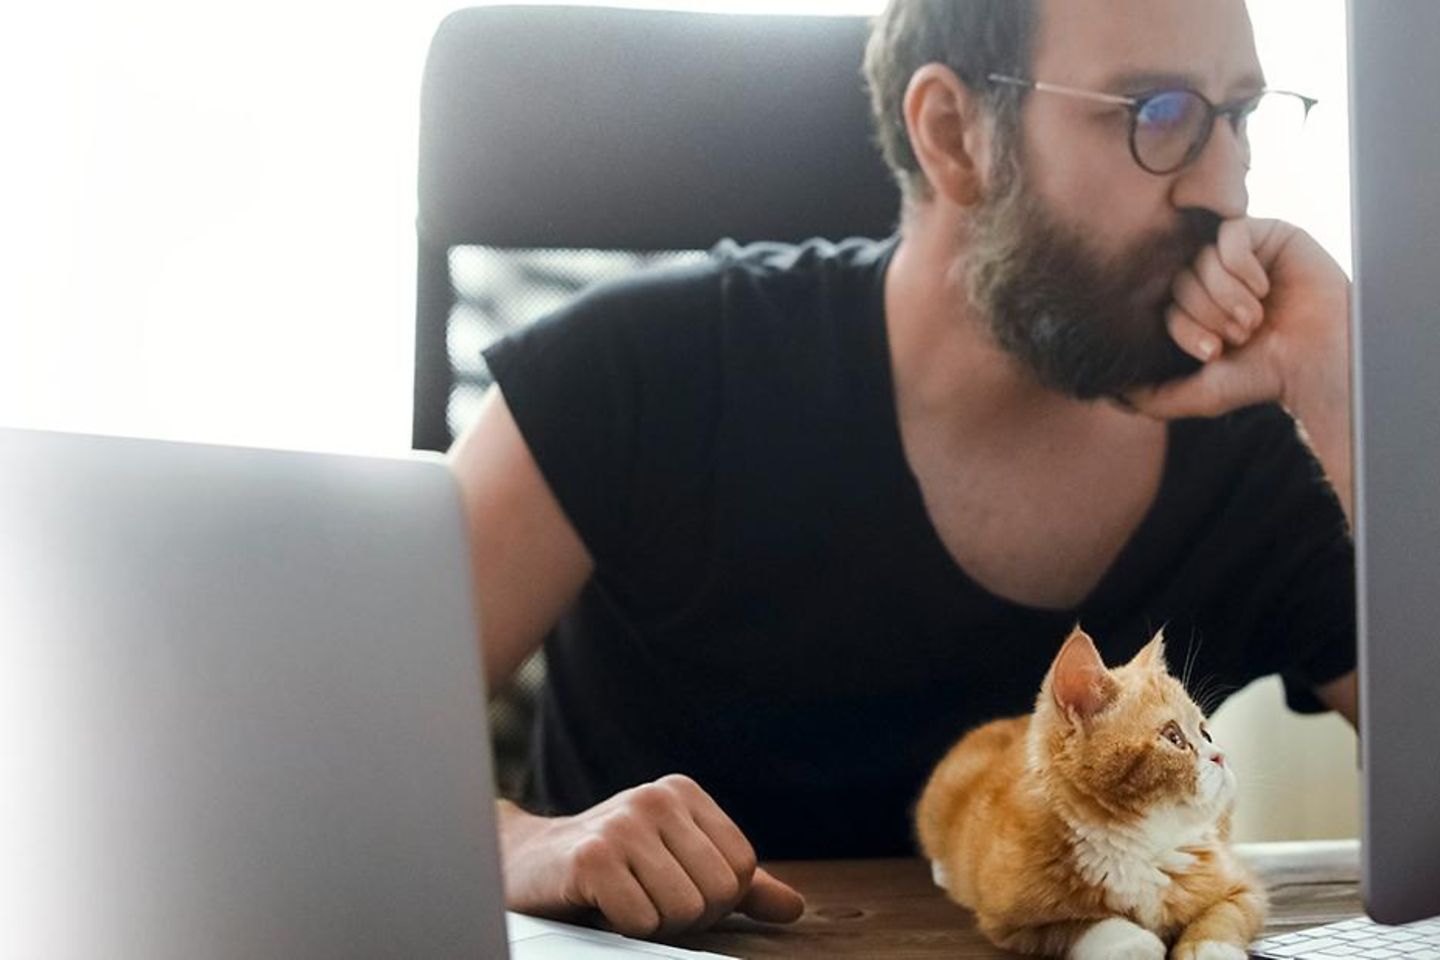 Un hombre se sienta en una mesa y mira una pantalla, en la mesa hay una computadora portátil y un gato.